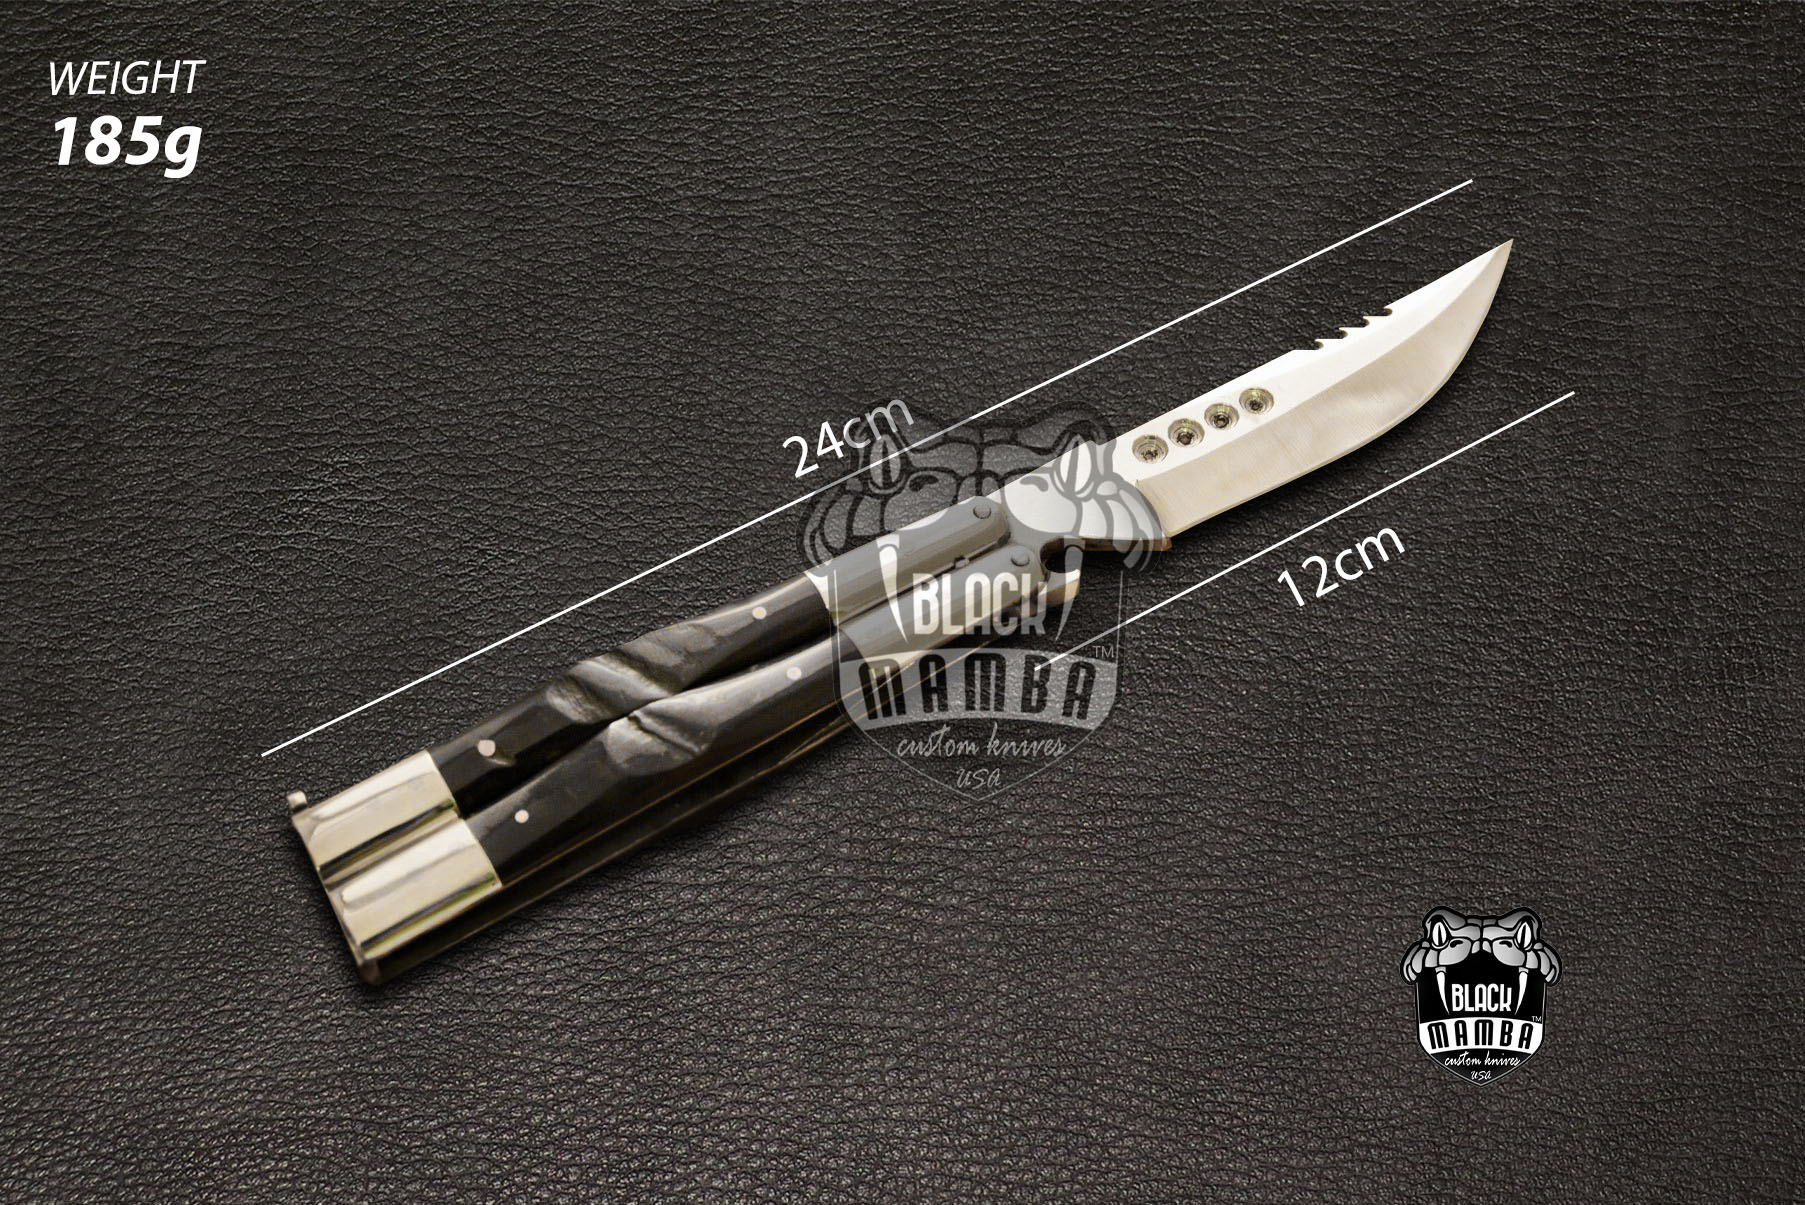 BMK-443High Carbon Steel Filipino Balisongs bone butterfly knifes